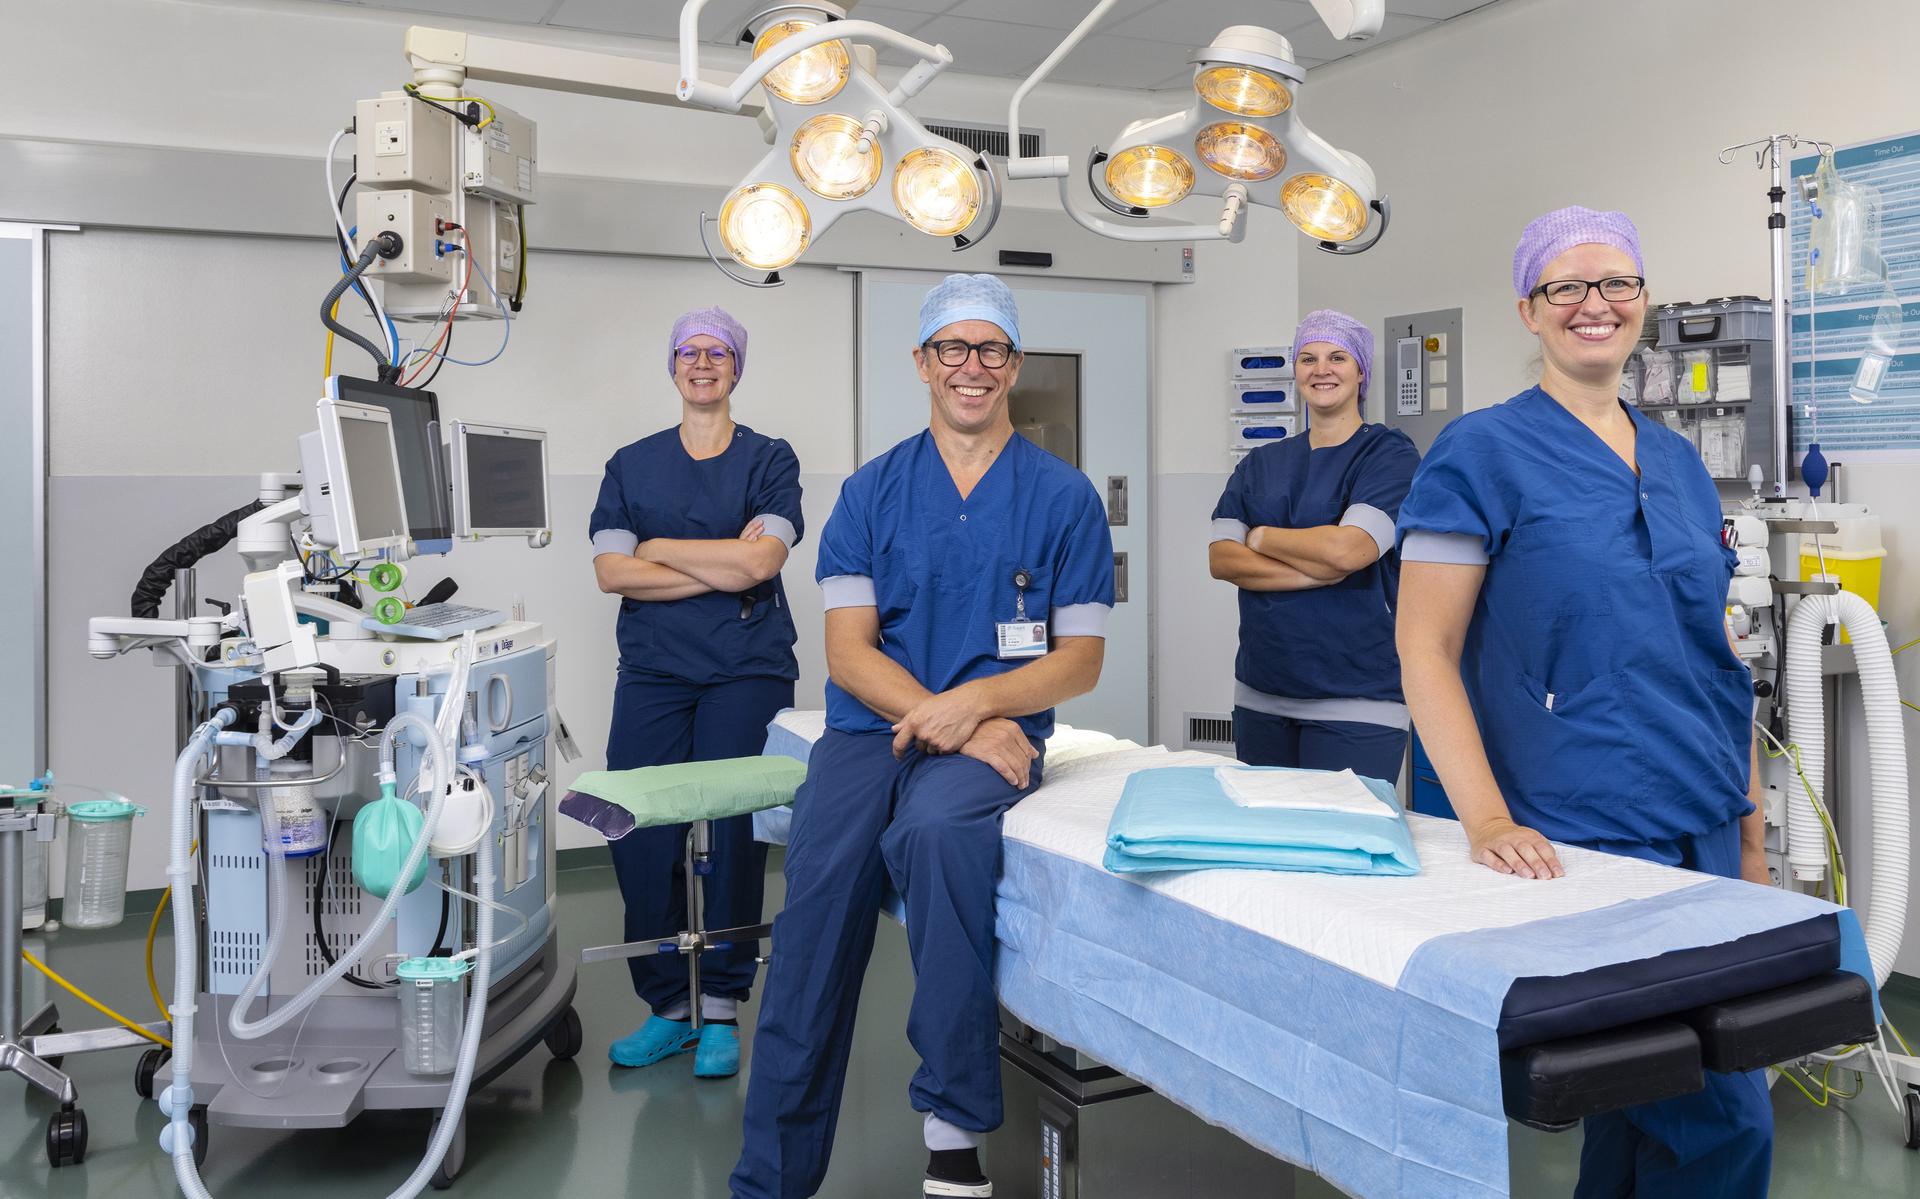 Op de foto van links naar rechts: Ilse Santing (hoofd OK), Rutger Hissink (vaatchirurg), Desiree Meems (operatieassistent) en Wendy Dikken (operatieassistent).